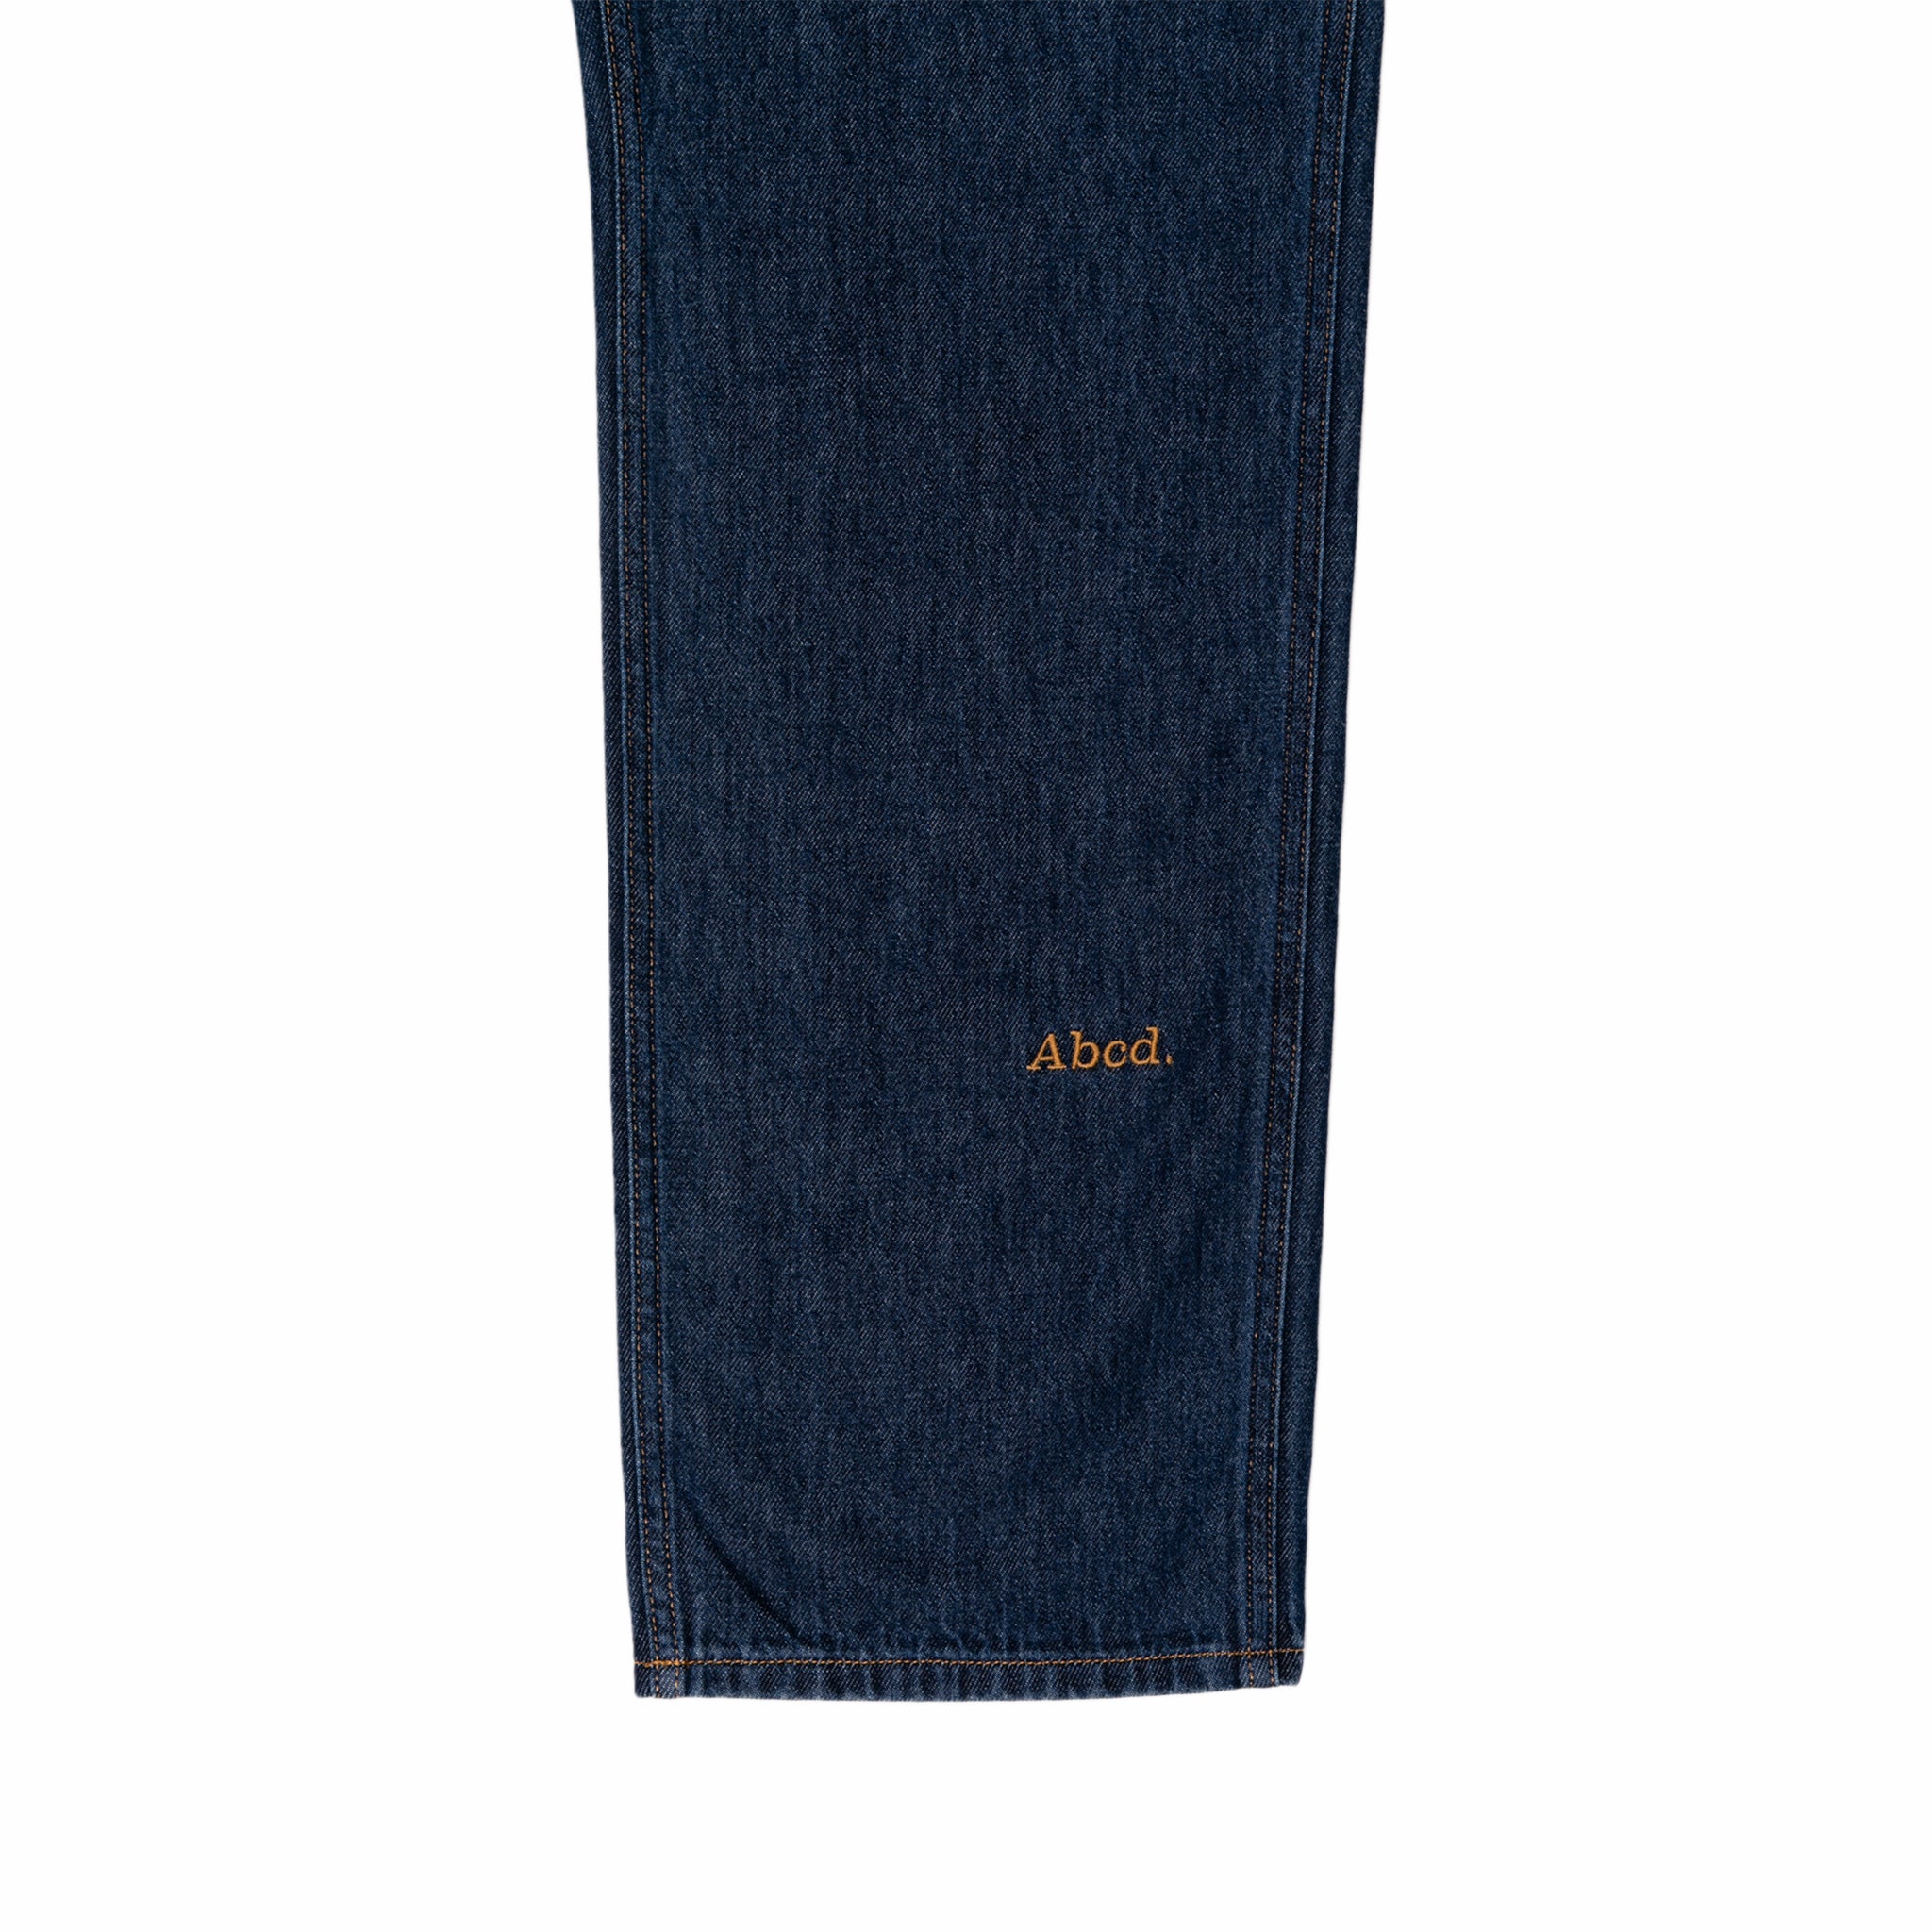 Abcd. Slim Fit Jean (Dark Blue Stonewash) - August Shop